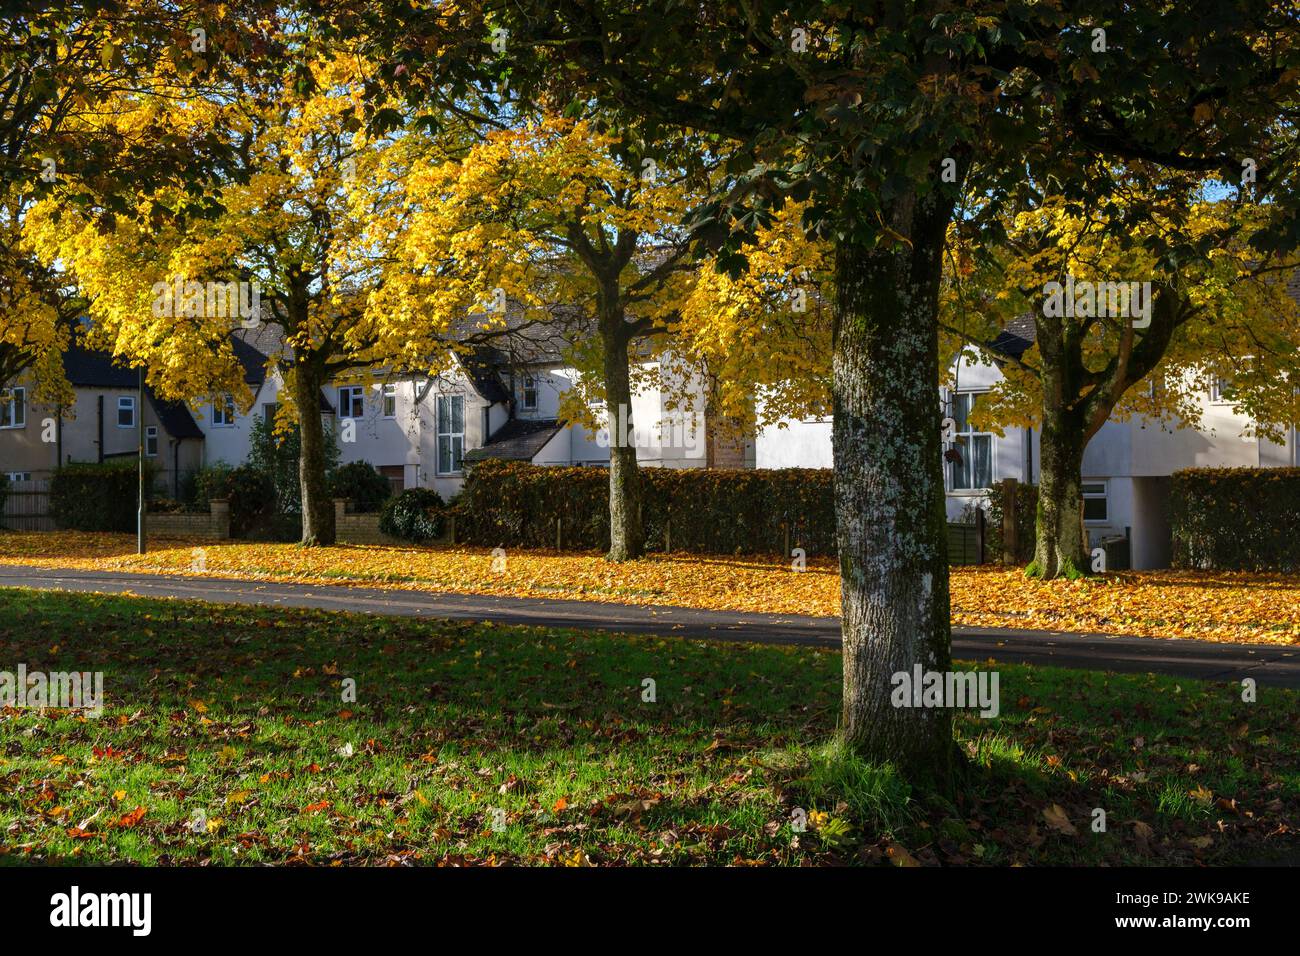 Des arbres au feuillage d'automne jaune vif bordent une route à Cirencester. La couleur d'automne est tardive cette année avec la plupart des arbres encore à tourner. Banque D'Images